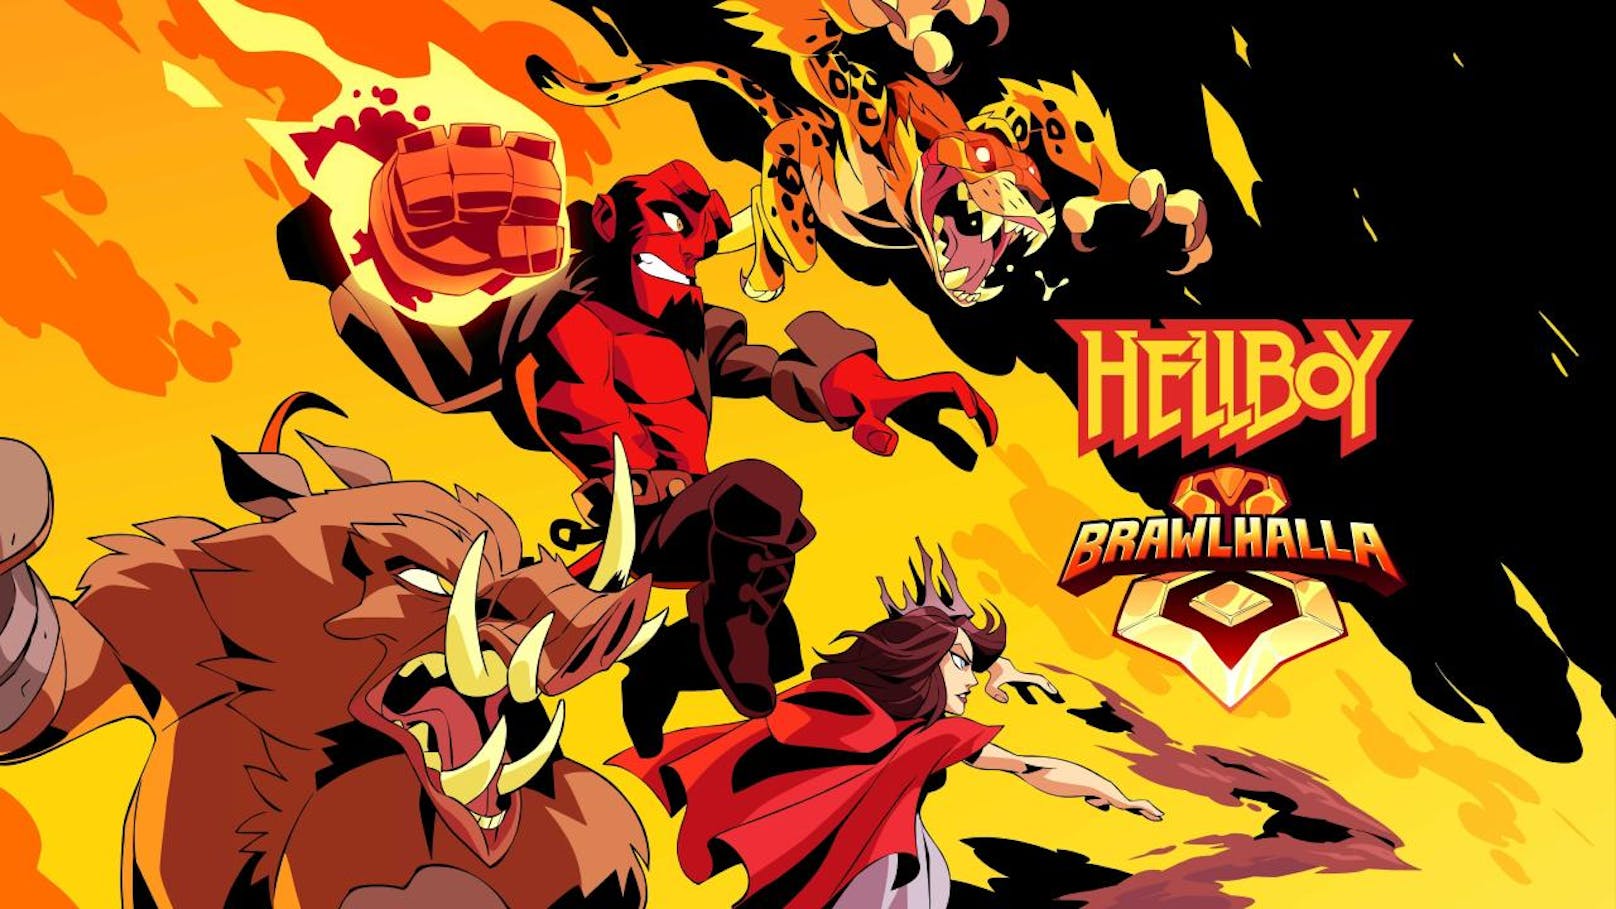 Ubisoft kündigte an, dass sie mit Lionsgate und Millennium Media zusammengearbeitet haben, um zur Feier des kommenden Films die legendären Hellboy-Charaktere Nimue, Gruagach, Ben Daimio und Hellboy im April in die Liste der Brawlhalla-Kämpfer aufzunehmen. Der höllisch gute Superheld Hellboy ist zurück und er brennt darauf, sich in den nächsten Kampf zu stürzen. Brawlhalla wurde von Blue Mammoth entwickelt und ist ein Free-to-Play-Plattform-Kampfspiel mit mehr als 15 Millionen Spielern auf PC und PlayStation 4 sowie Xbox One und Nintendo Switch.